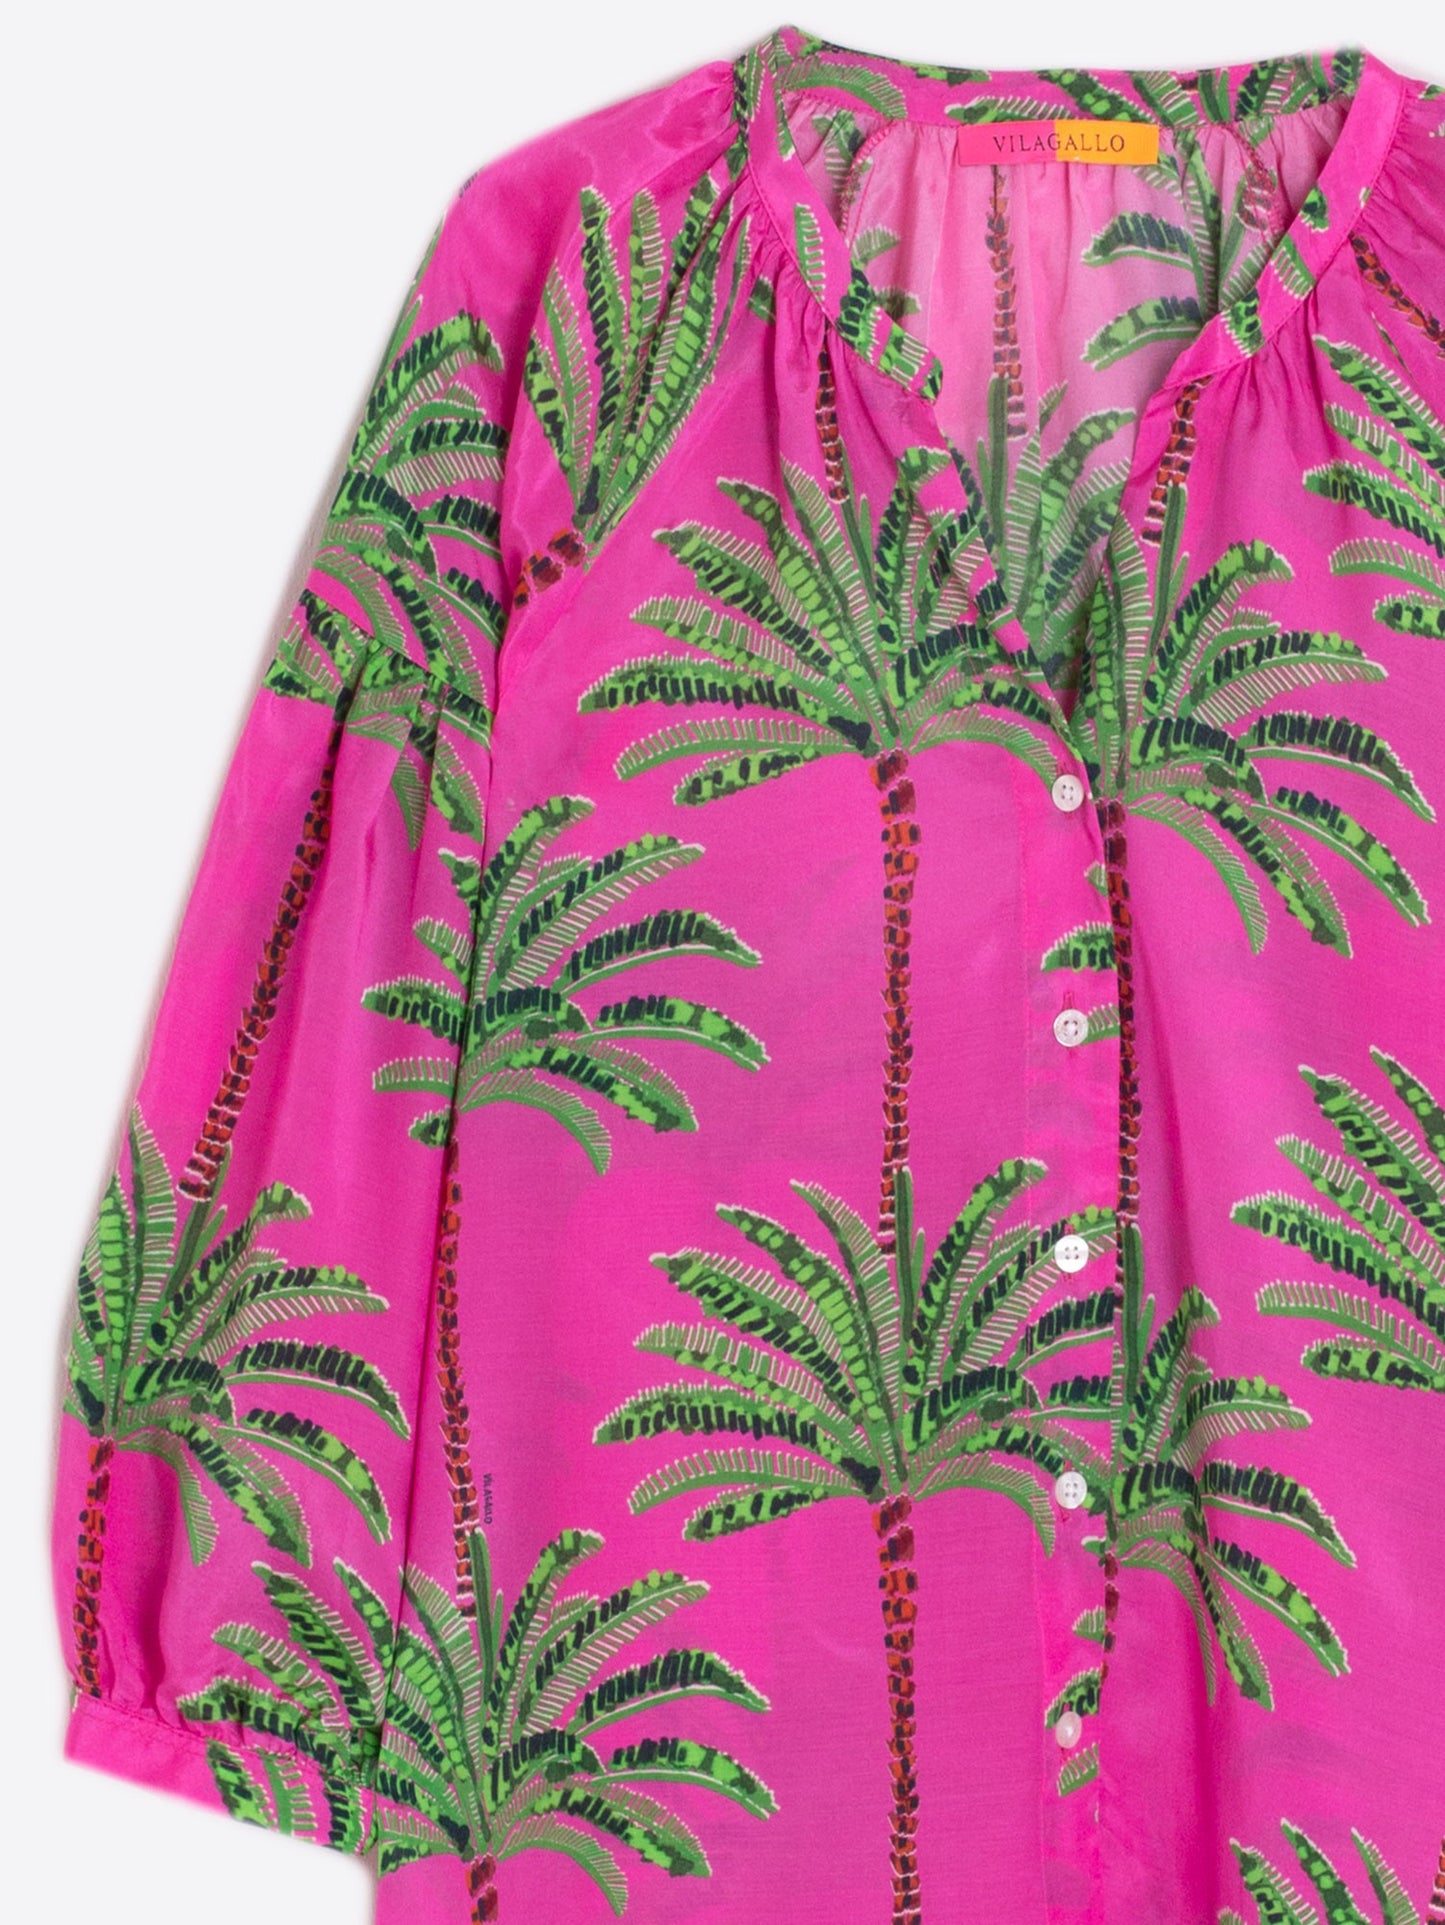 Mabel Shirt in Pink Palm Tree